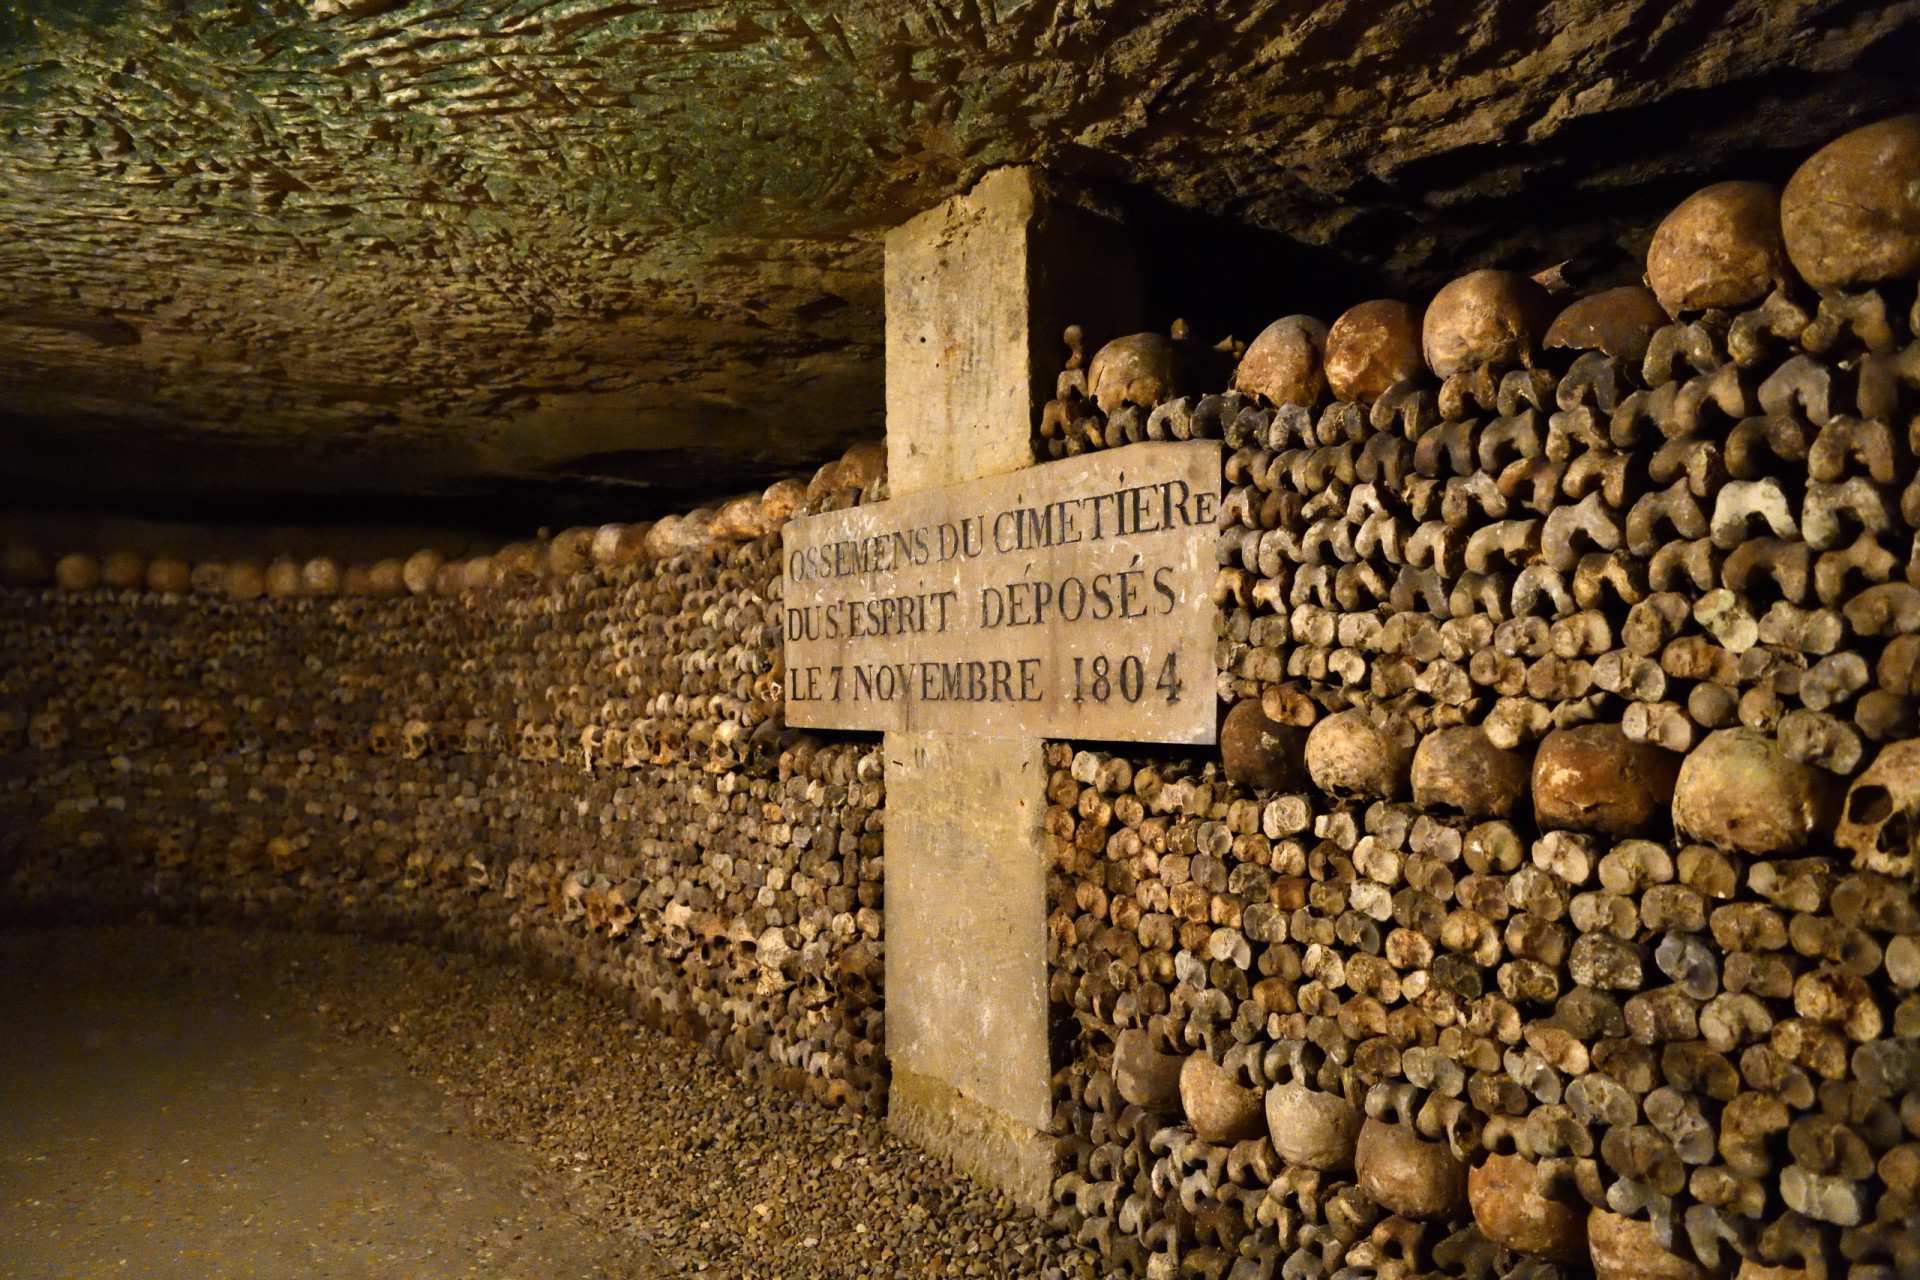 <p>Incroyable, le réseau d'ossuaires souterrains cachés sous la capitale française renferme les restes de millions de personnes.</p>